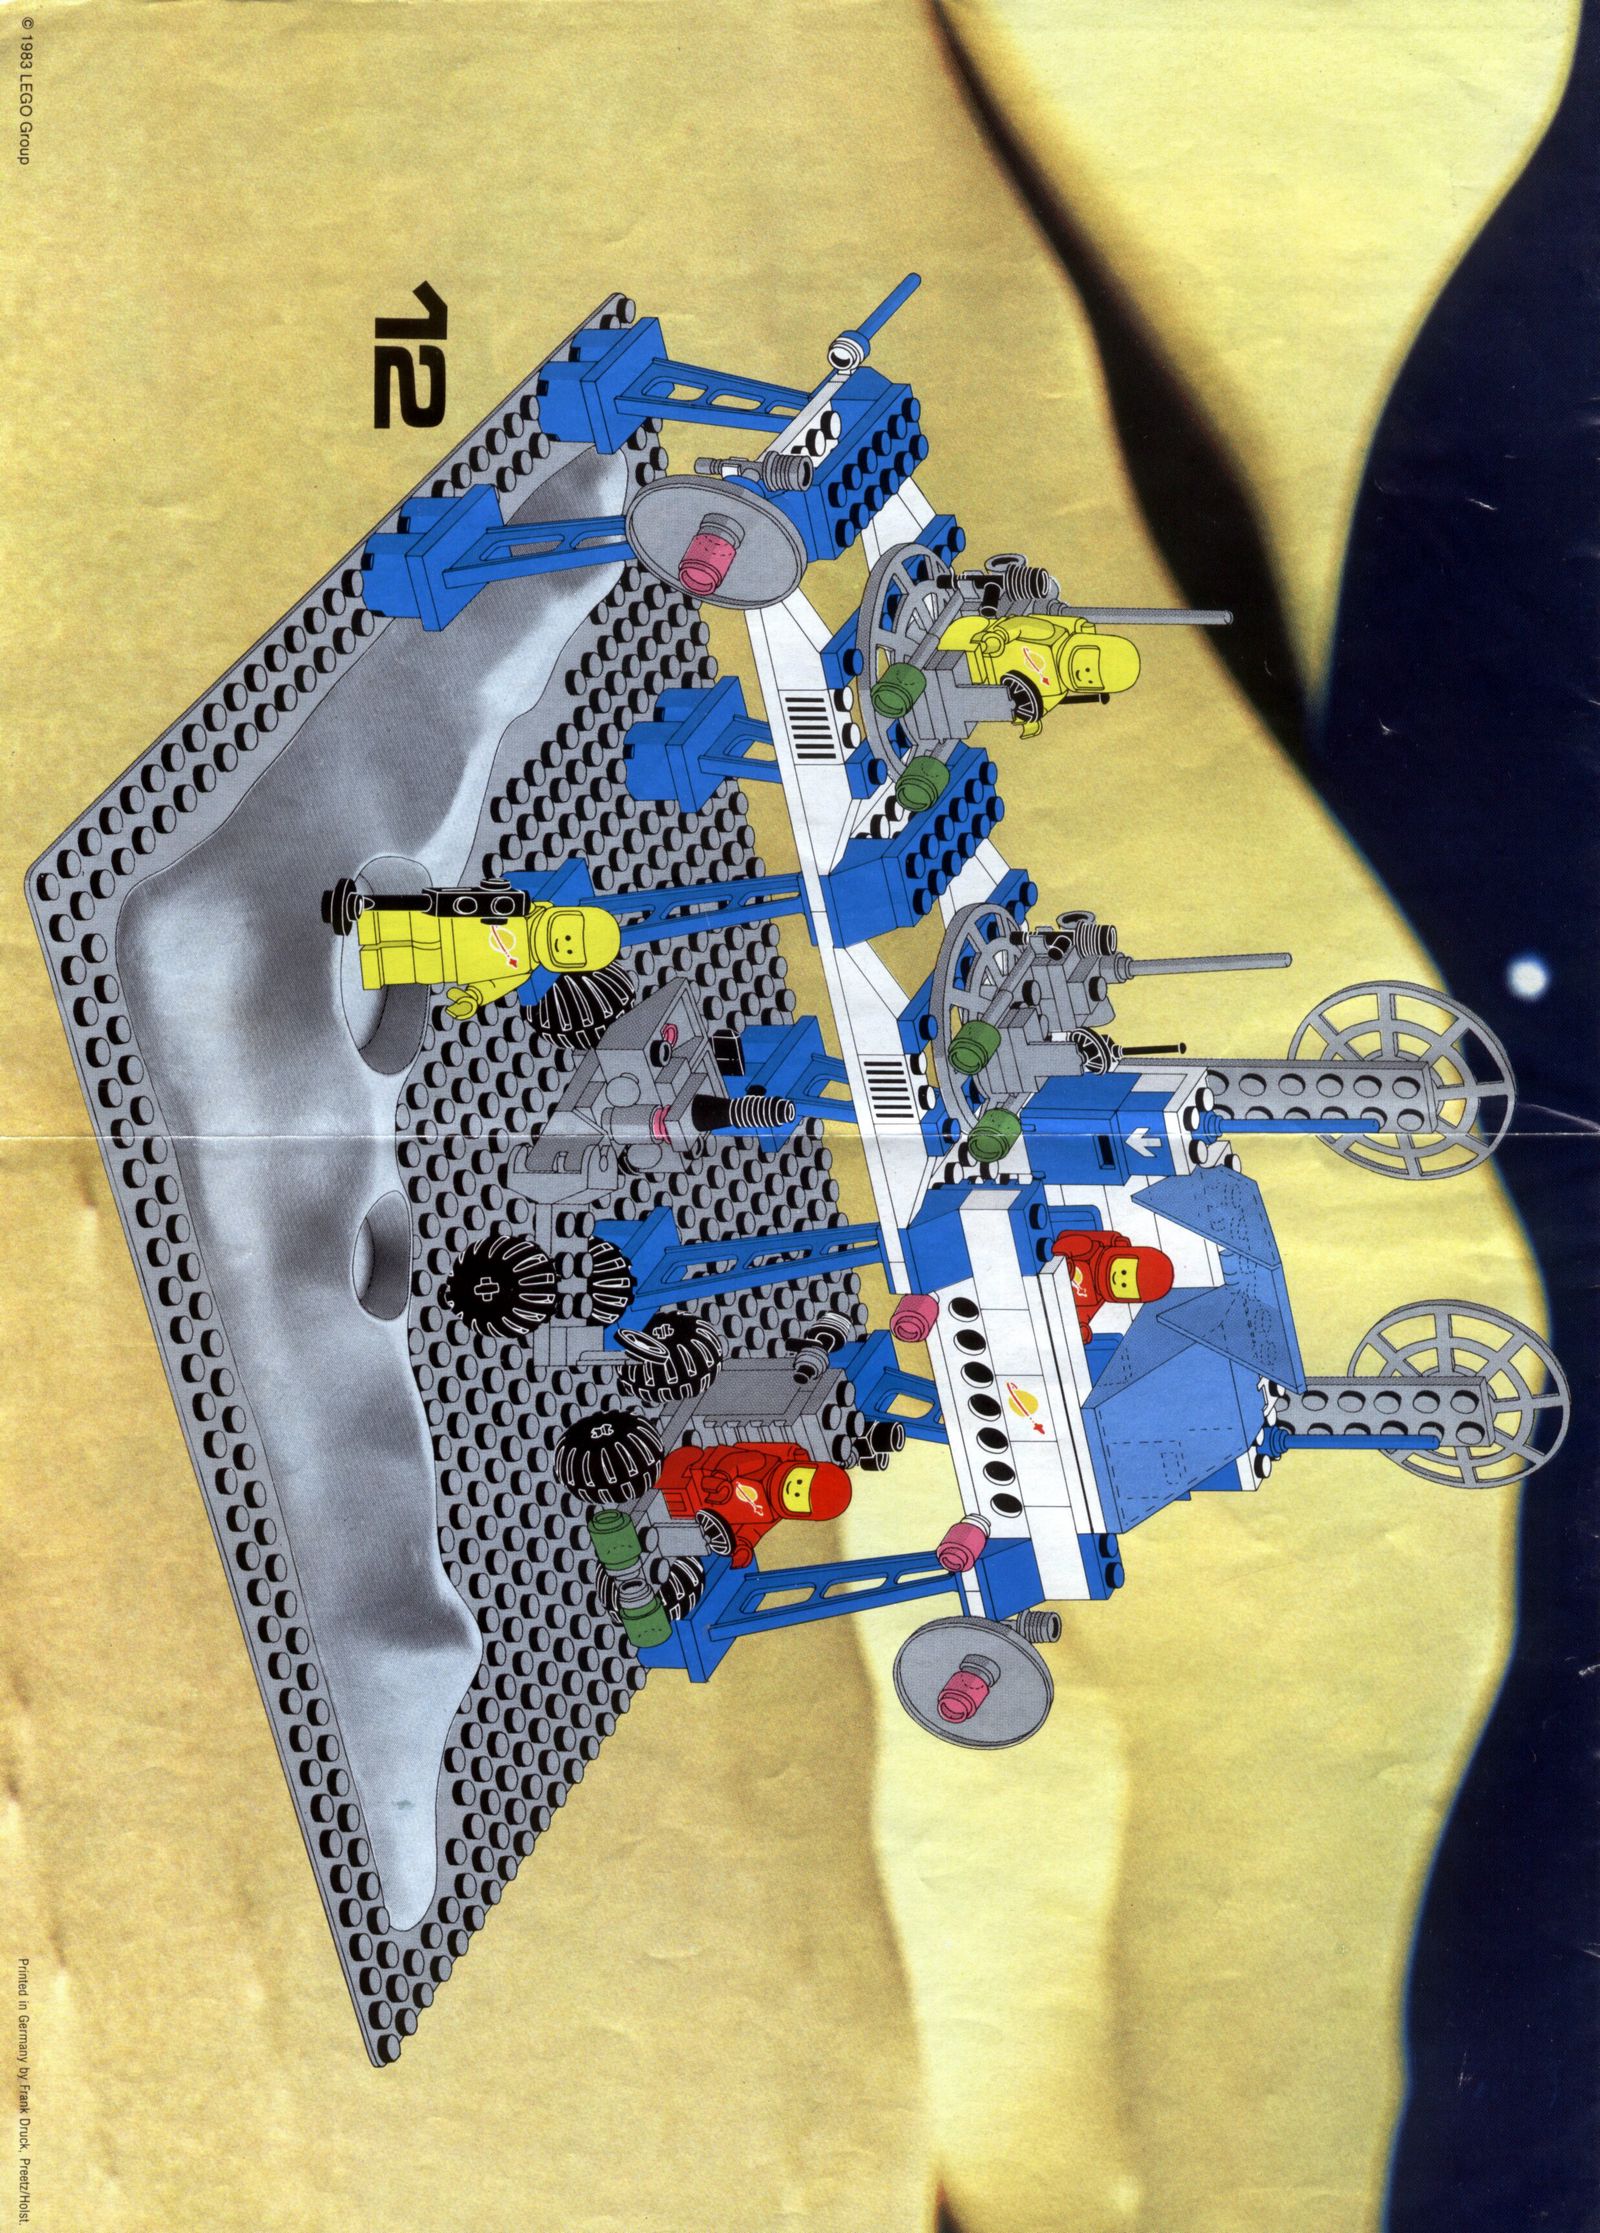 LEGO 6930